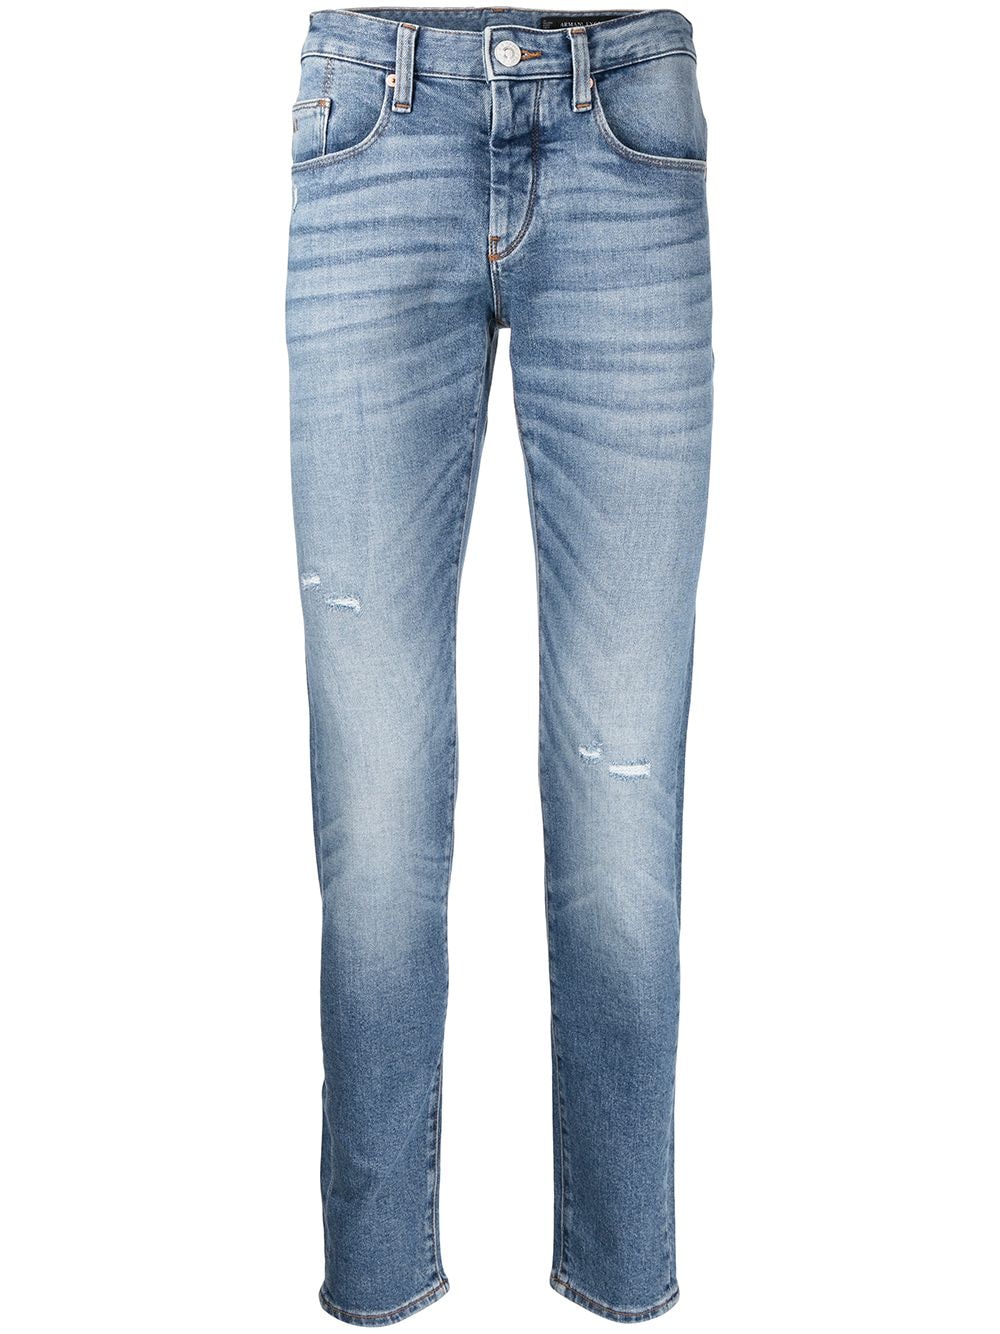 фото Armani exchange джинсы скинни с эффектом потертости